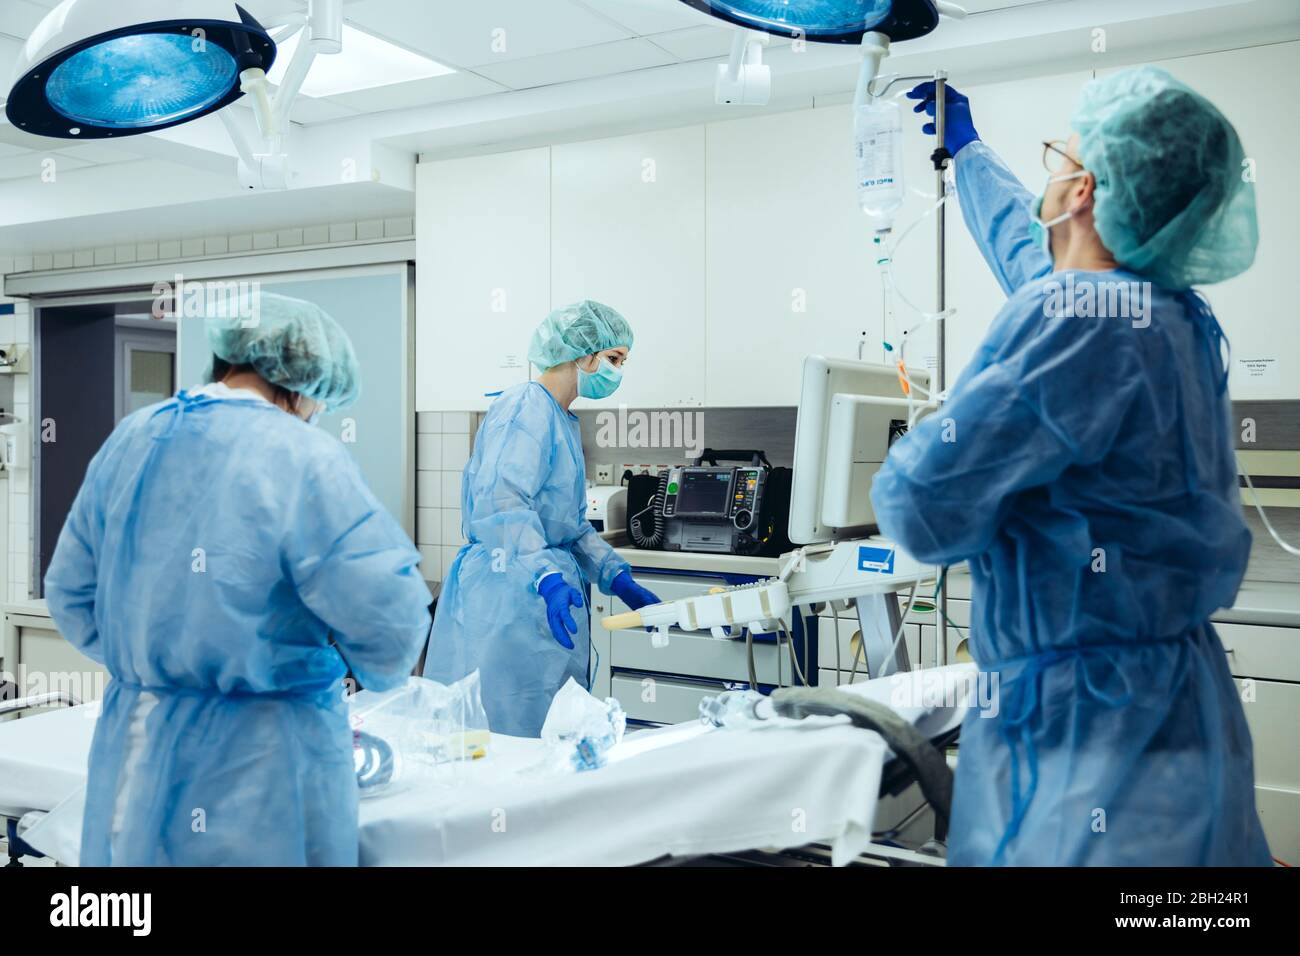 Médecin préparant un perfusion IV dans la salle de traumatologie d'un hôpital Banque D'Images